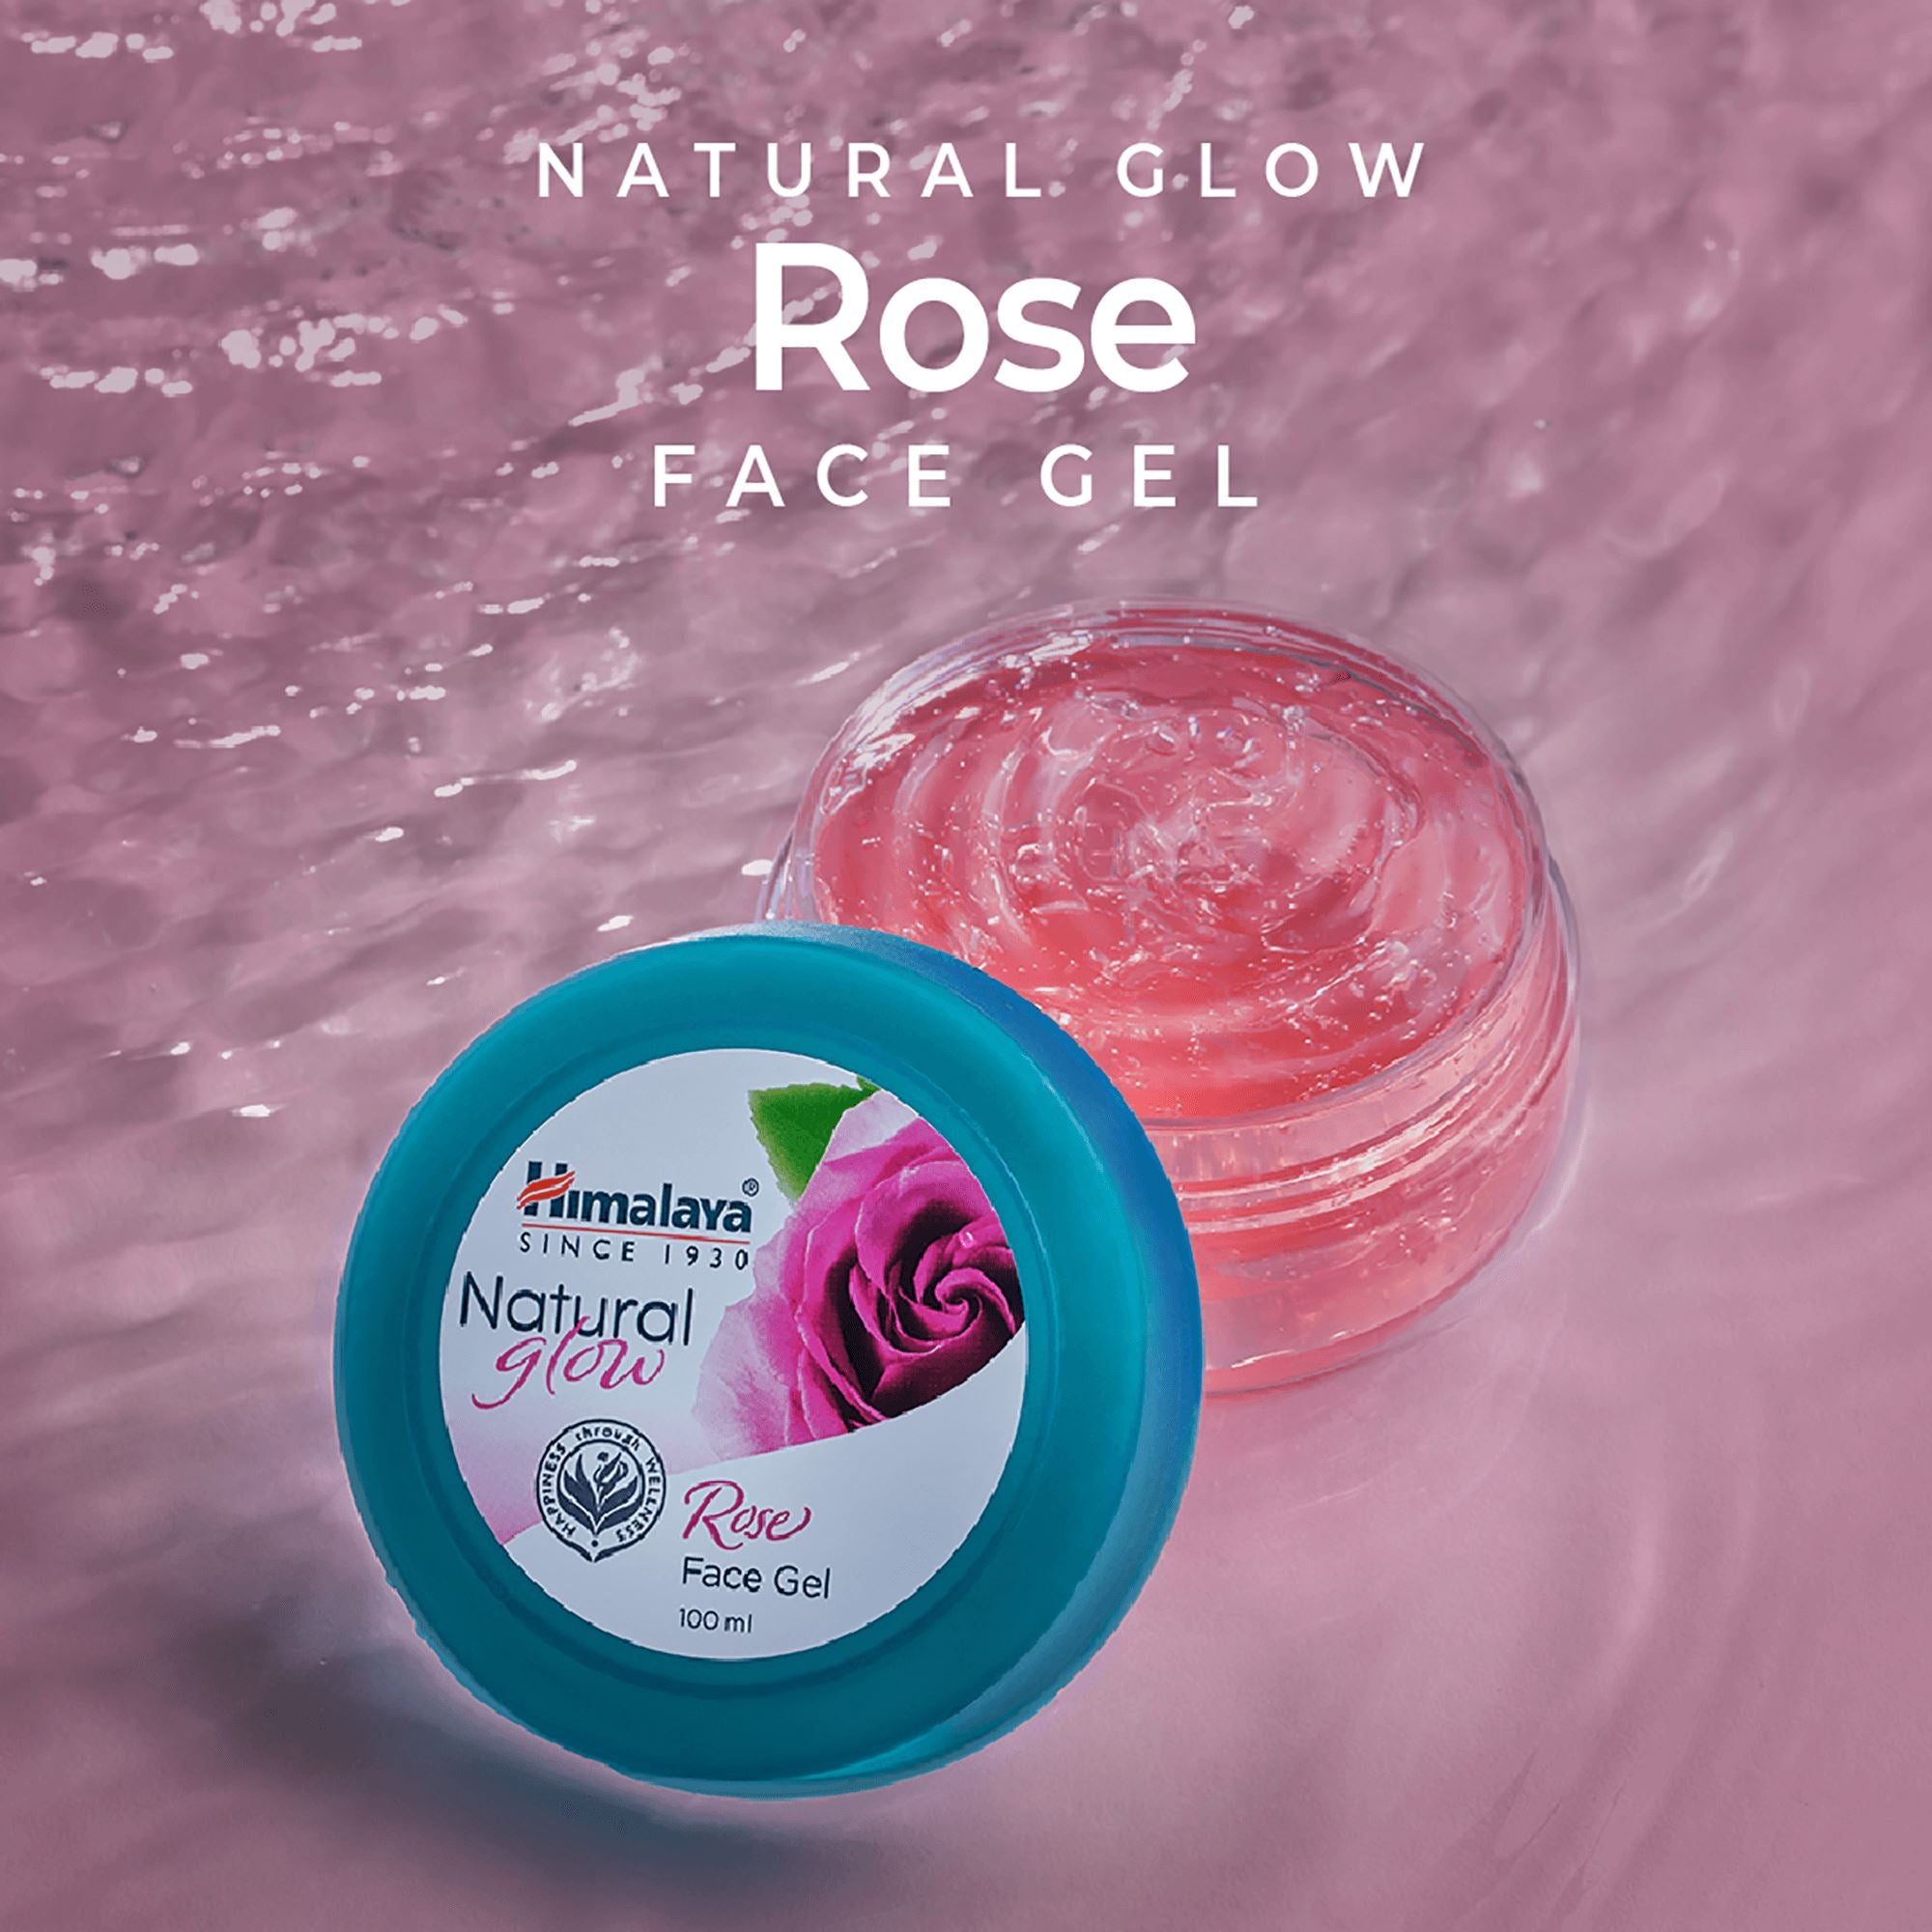 Himalaya Natural Glow Rose Face Gel - Revitalizes Dull Skin